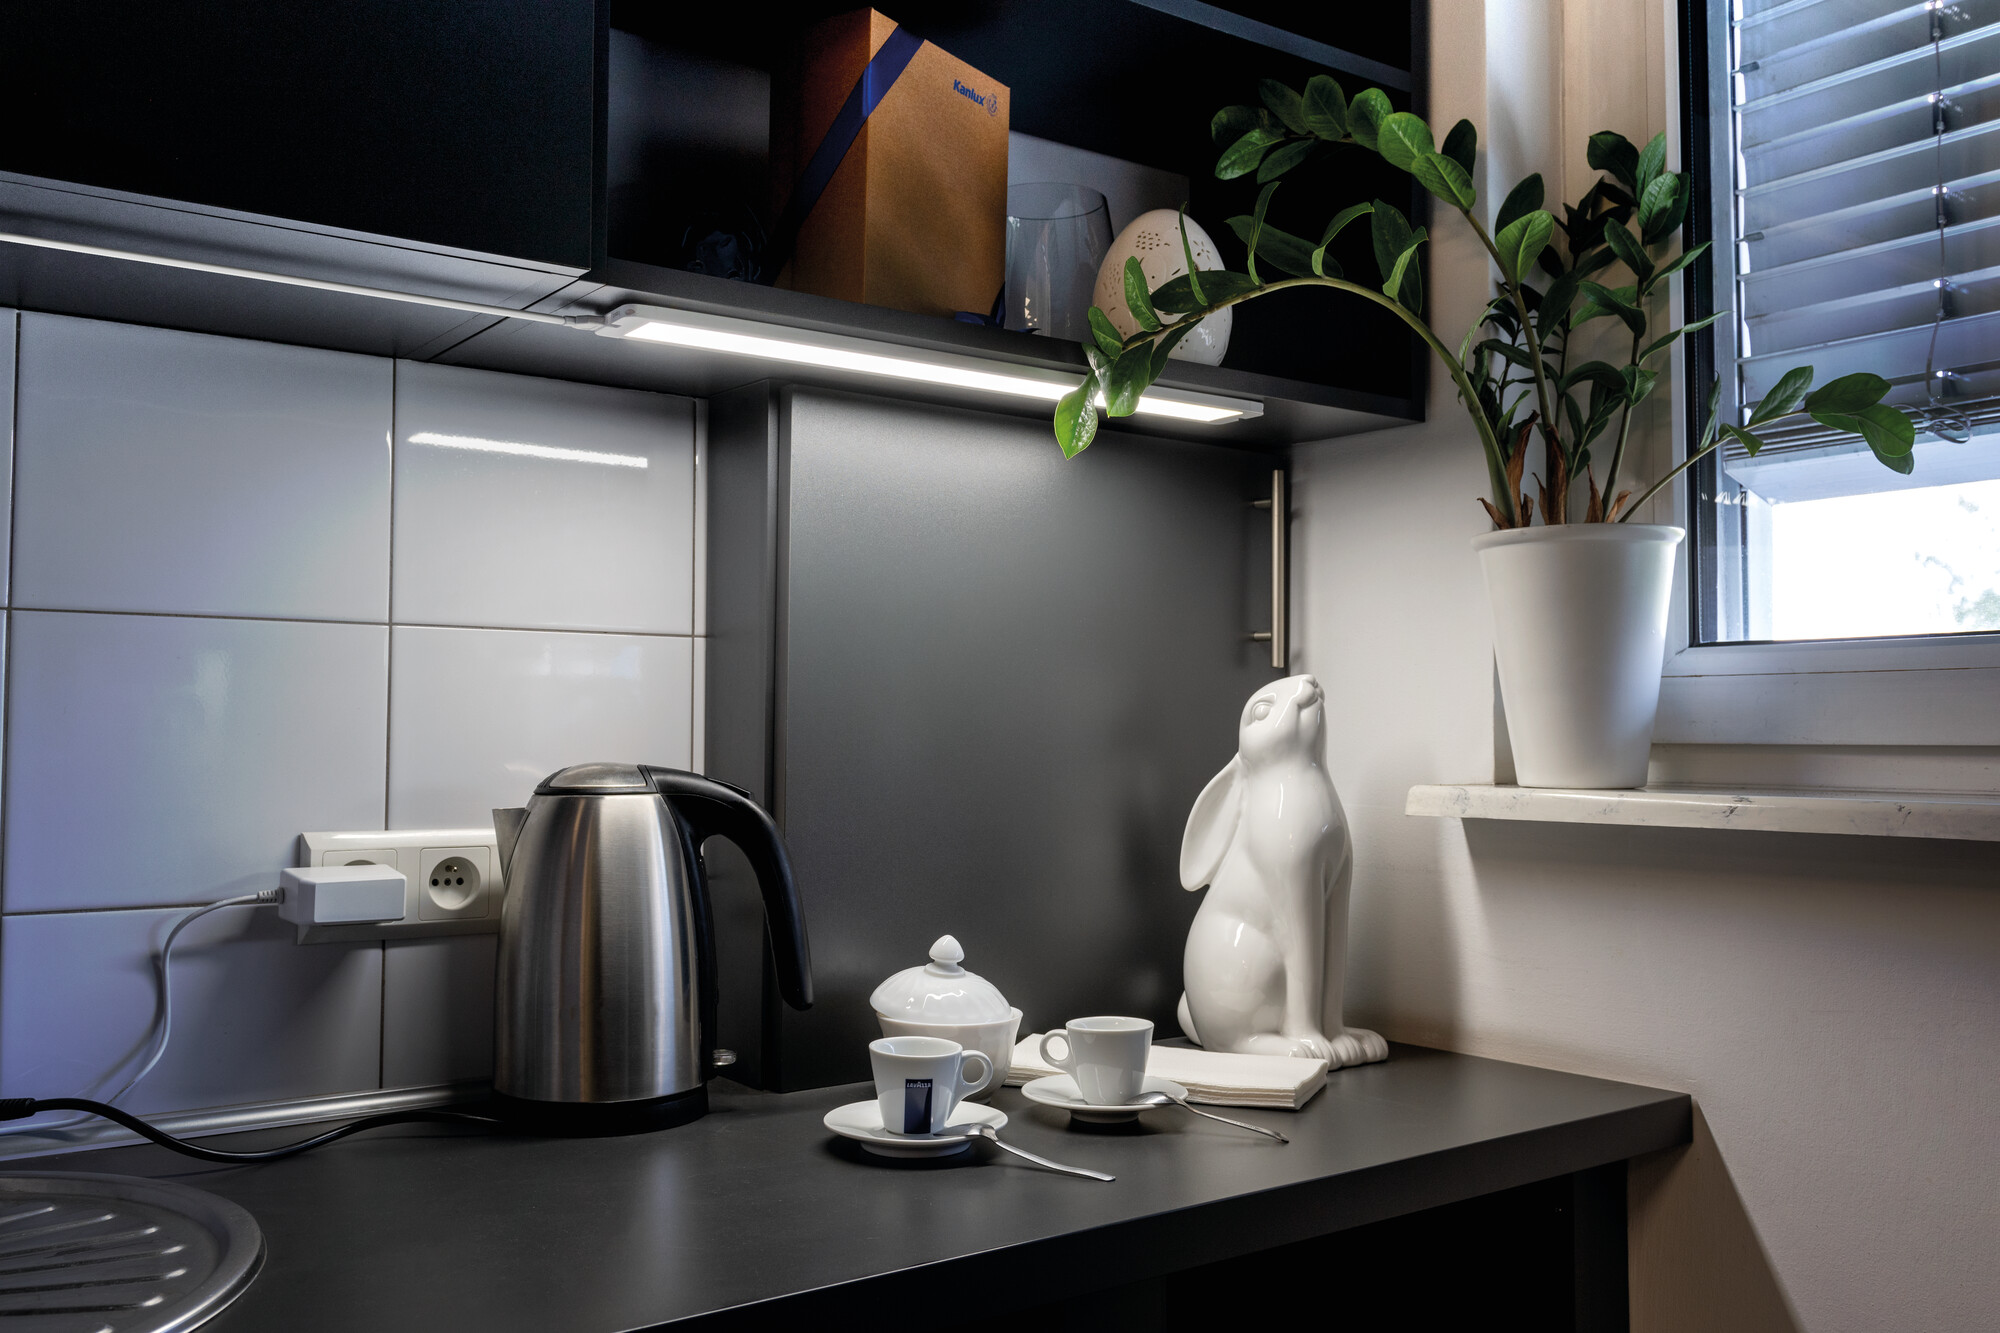 LEDy w kuchni: Jak oświetlenie może poprawić atmosferę i wydajność? - 2